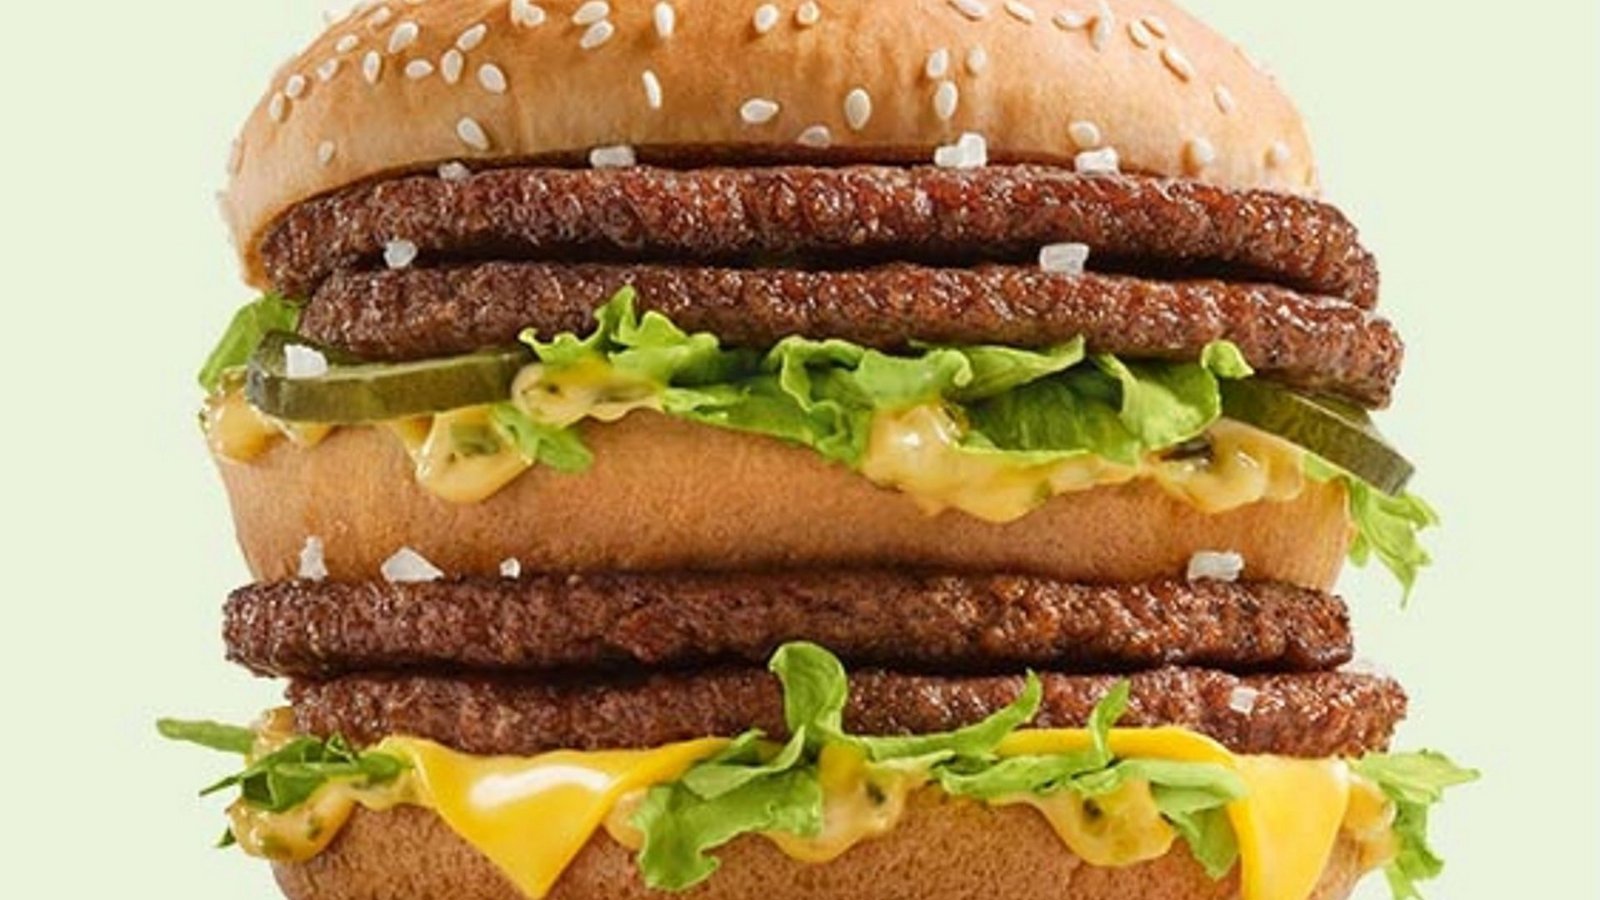 Der Preis für einen Big Mac ist je nach Land unterschiedlich, ermöglicht aber Vergleiche zur Kaufkraft in den Ländern.Foto: McDonald’s Deutschland